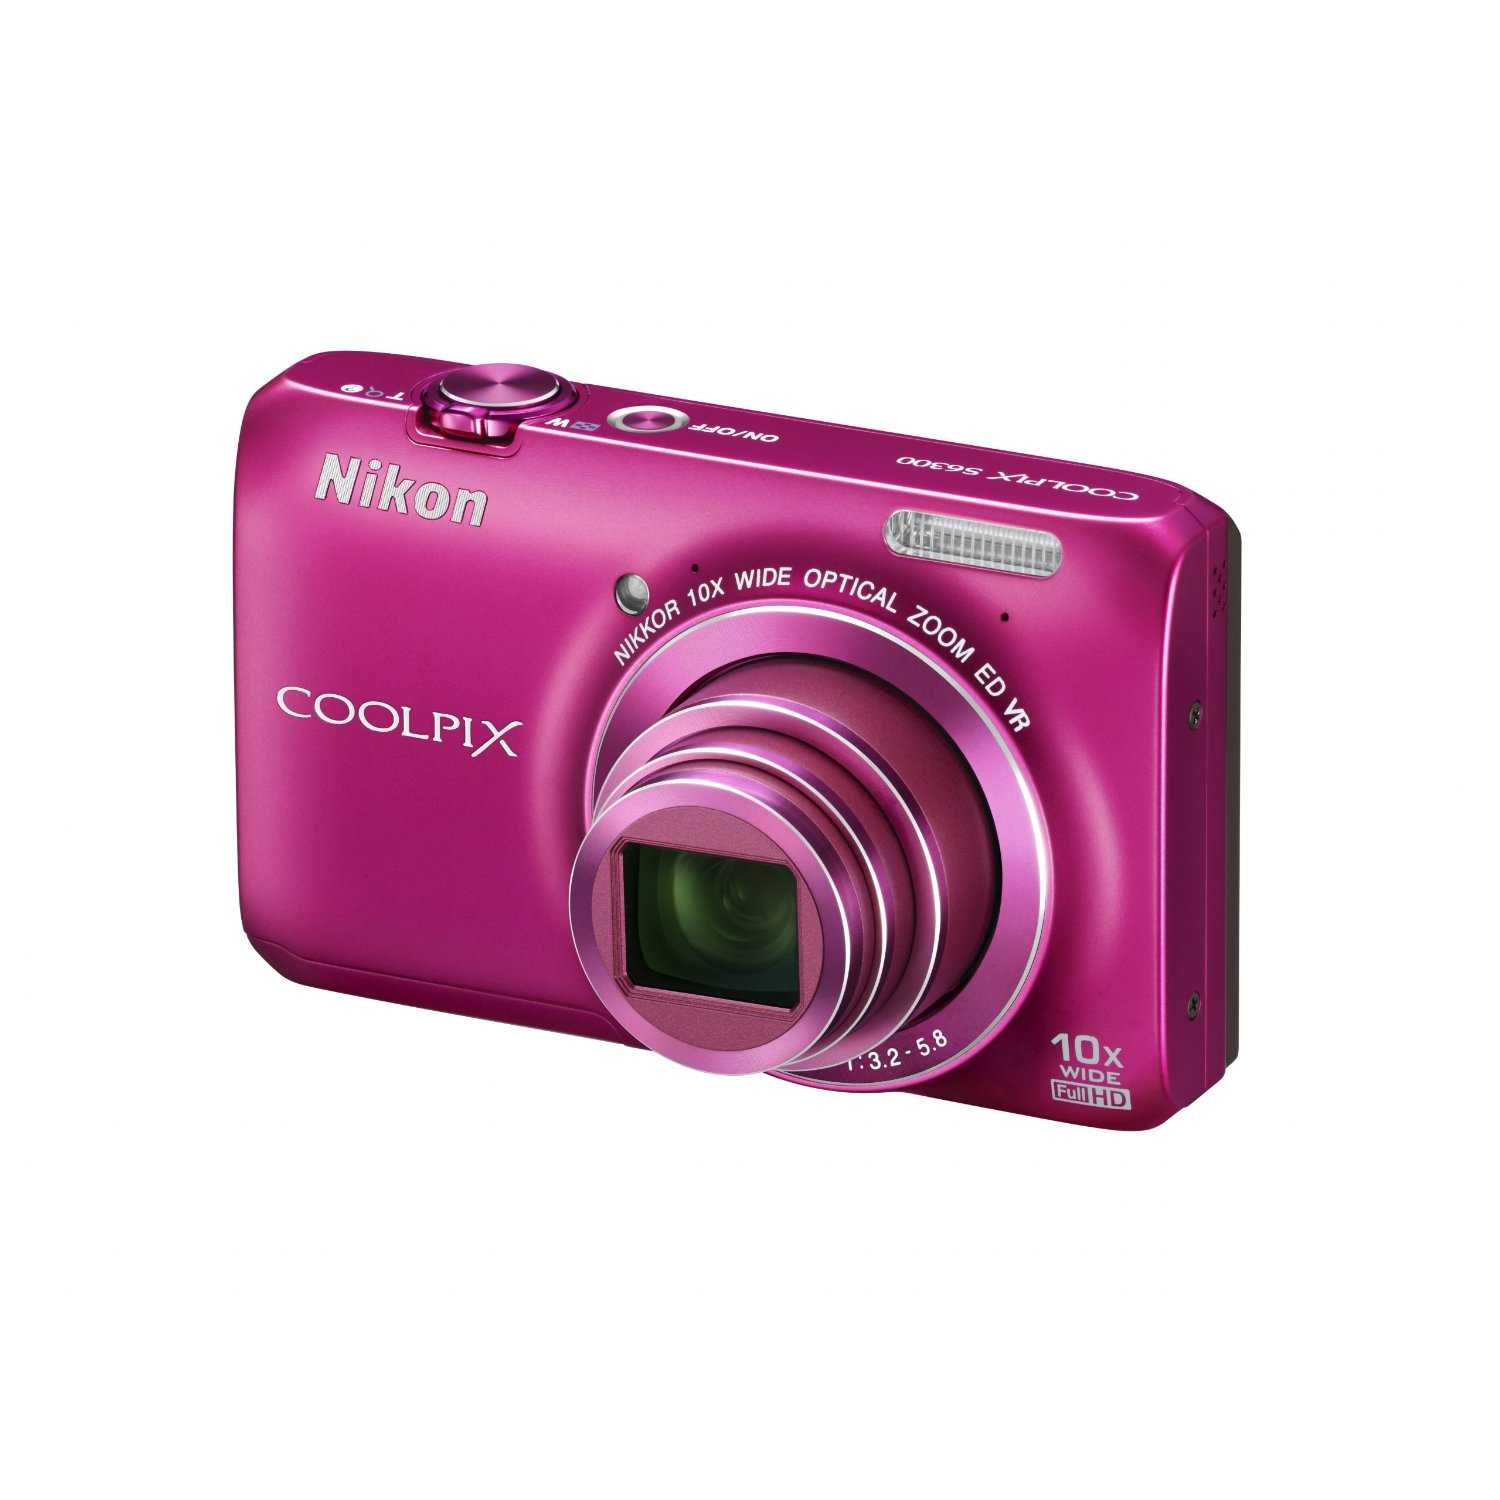 Фотоаппарат nikon coolpix s02 — купить, цена и характеристики, отзывы